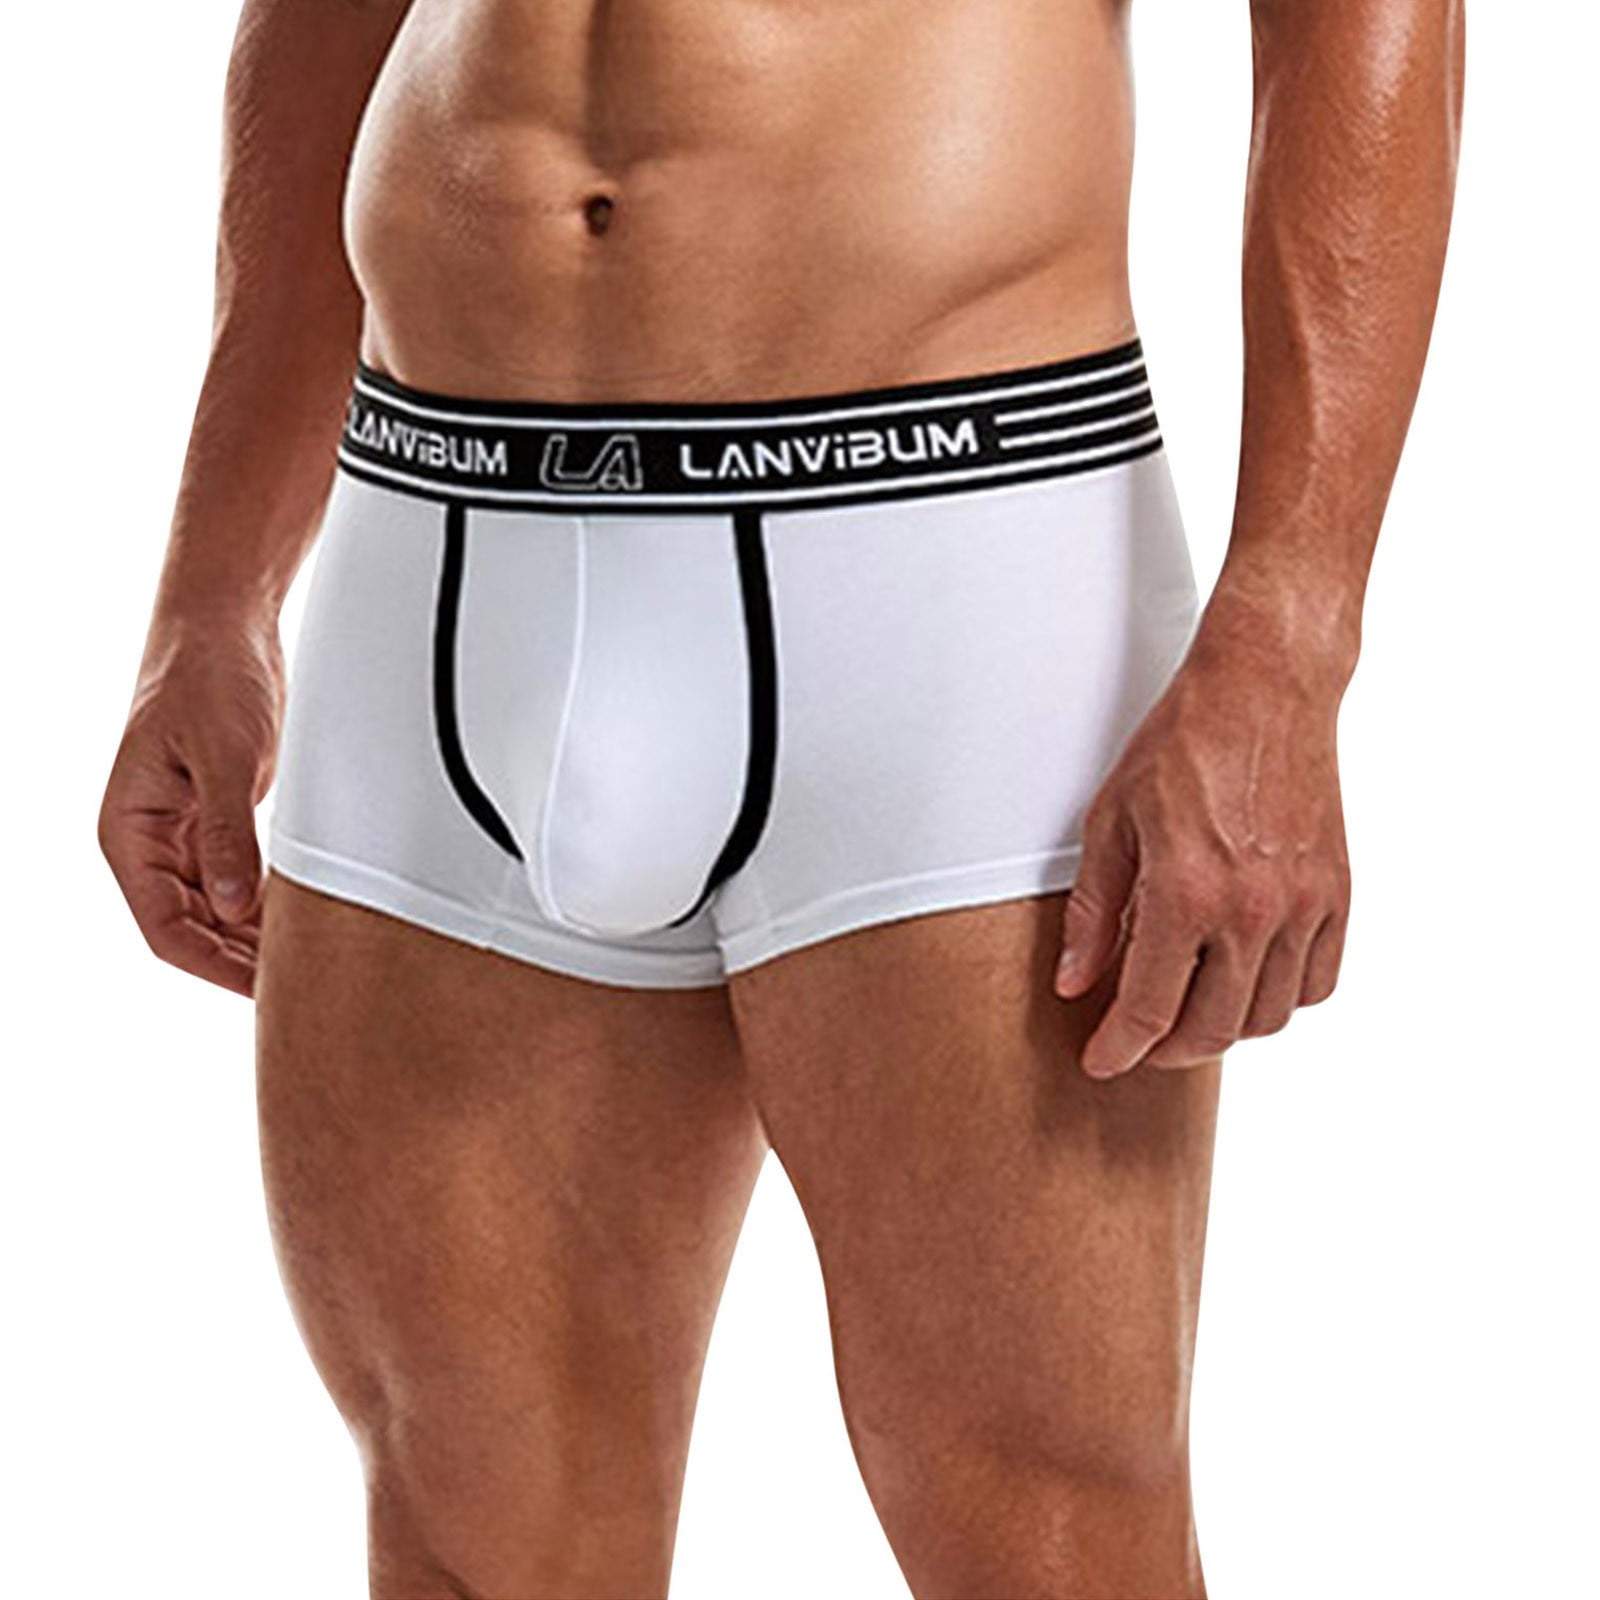 zuwimk Mens Underwear Briefs,Men's Jockstraps Jock Strap Stretch Supporters  Breathable Mesh Underwear Low Rise White,L 